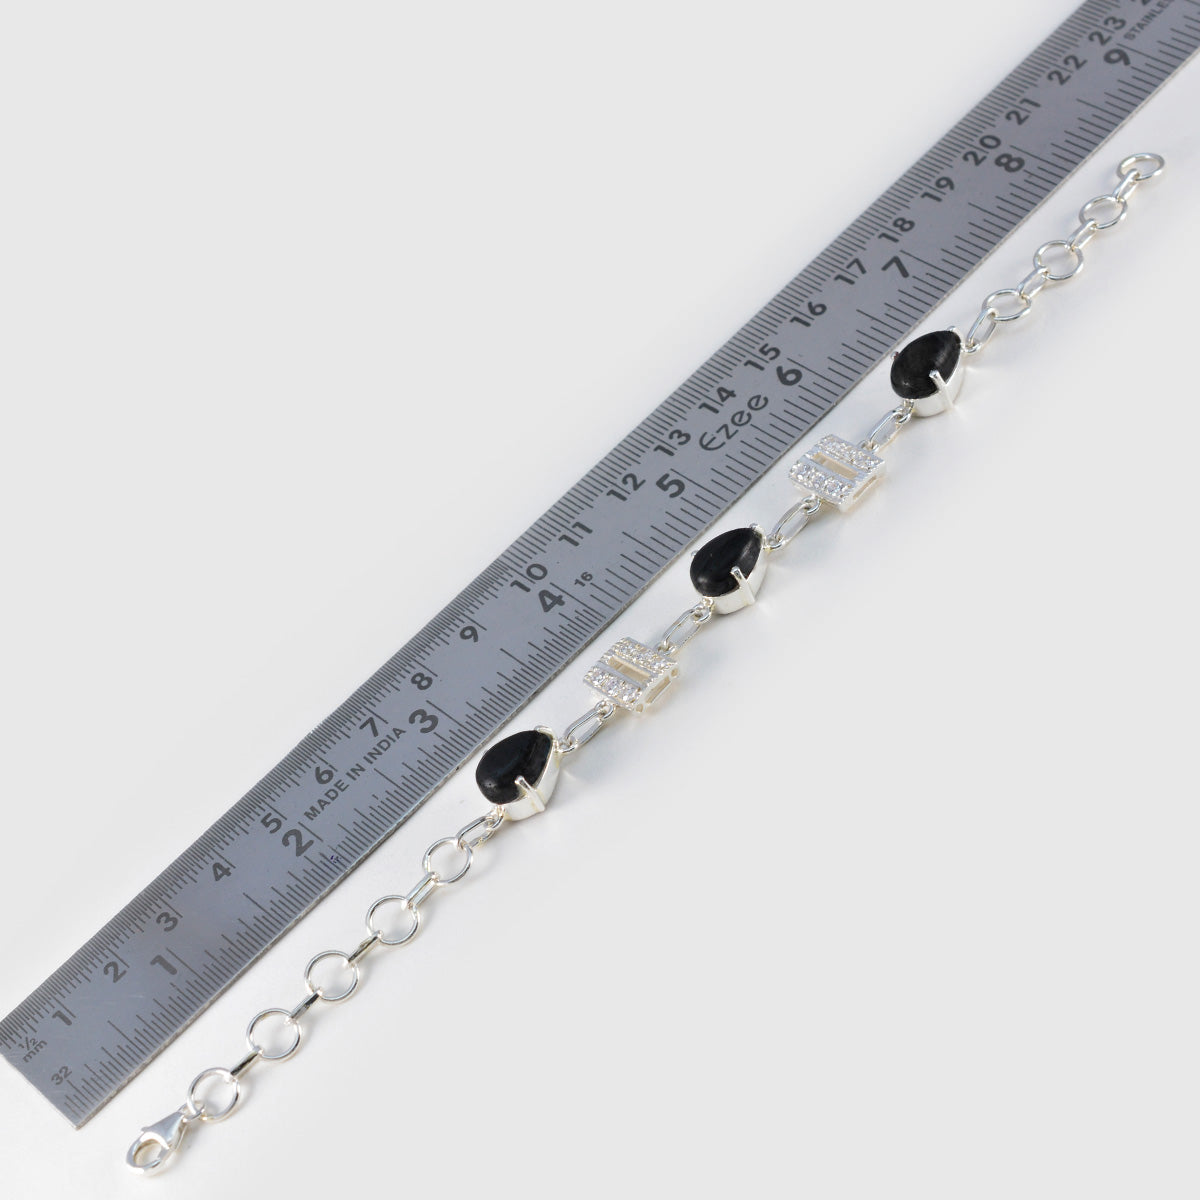 Riyo Jaipur 925 Sterling Silber Armband für Mädchen, schwarzes Onyx-Armband, Krappenfassung, Armband mit Fischhaken-Gliederarmband, Größe L: 15,2–21,6 cm.